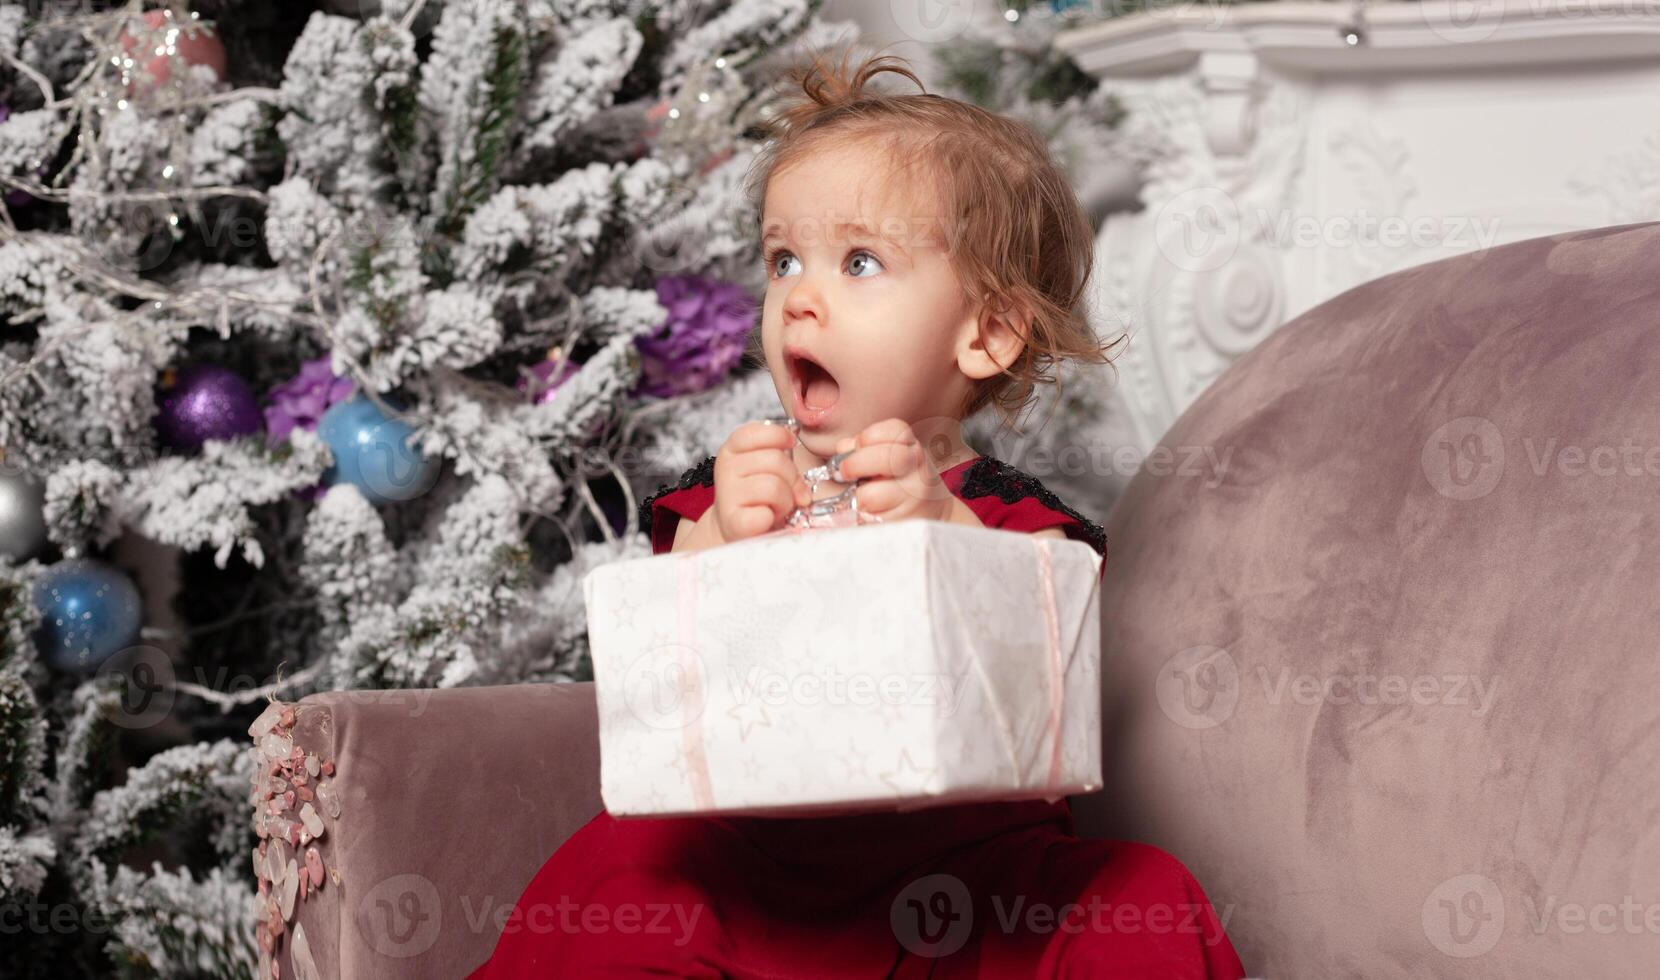 en skön söt liten flicka klädd i ett elegant kväll röd klänning sitter på de soffa och öppnas en ny år gåva. med jul träd på de bakgrund foto